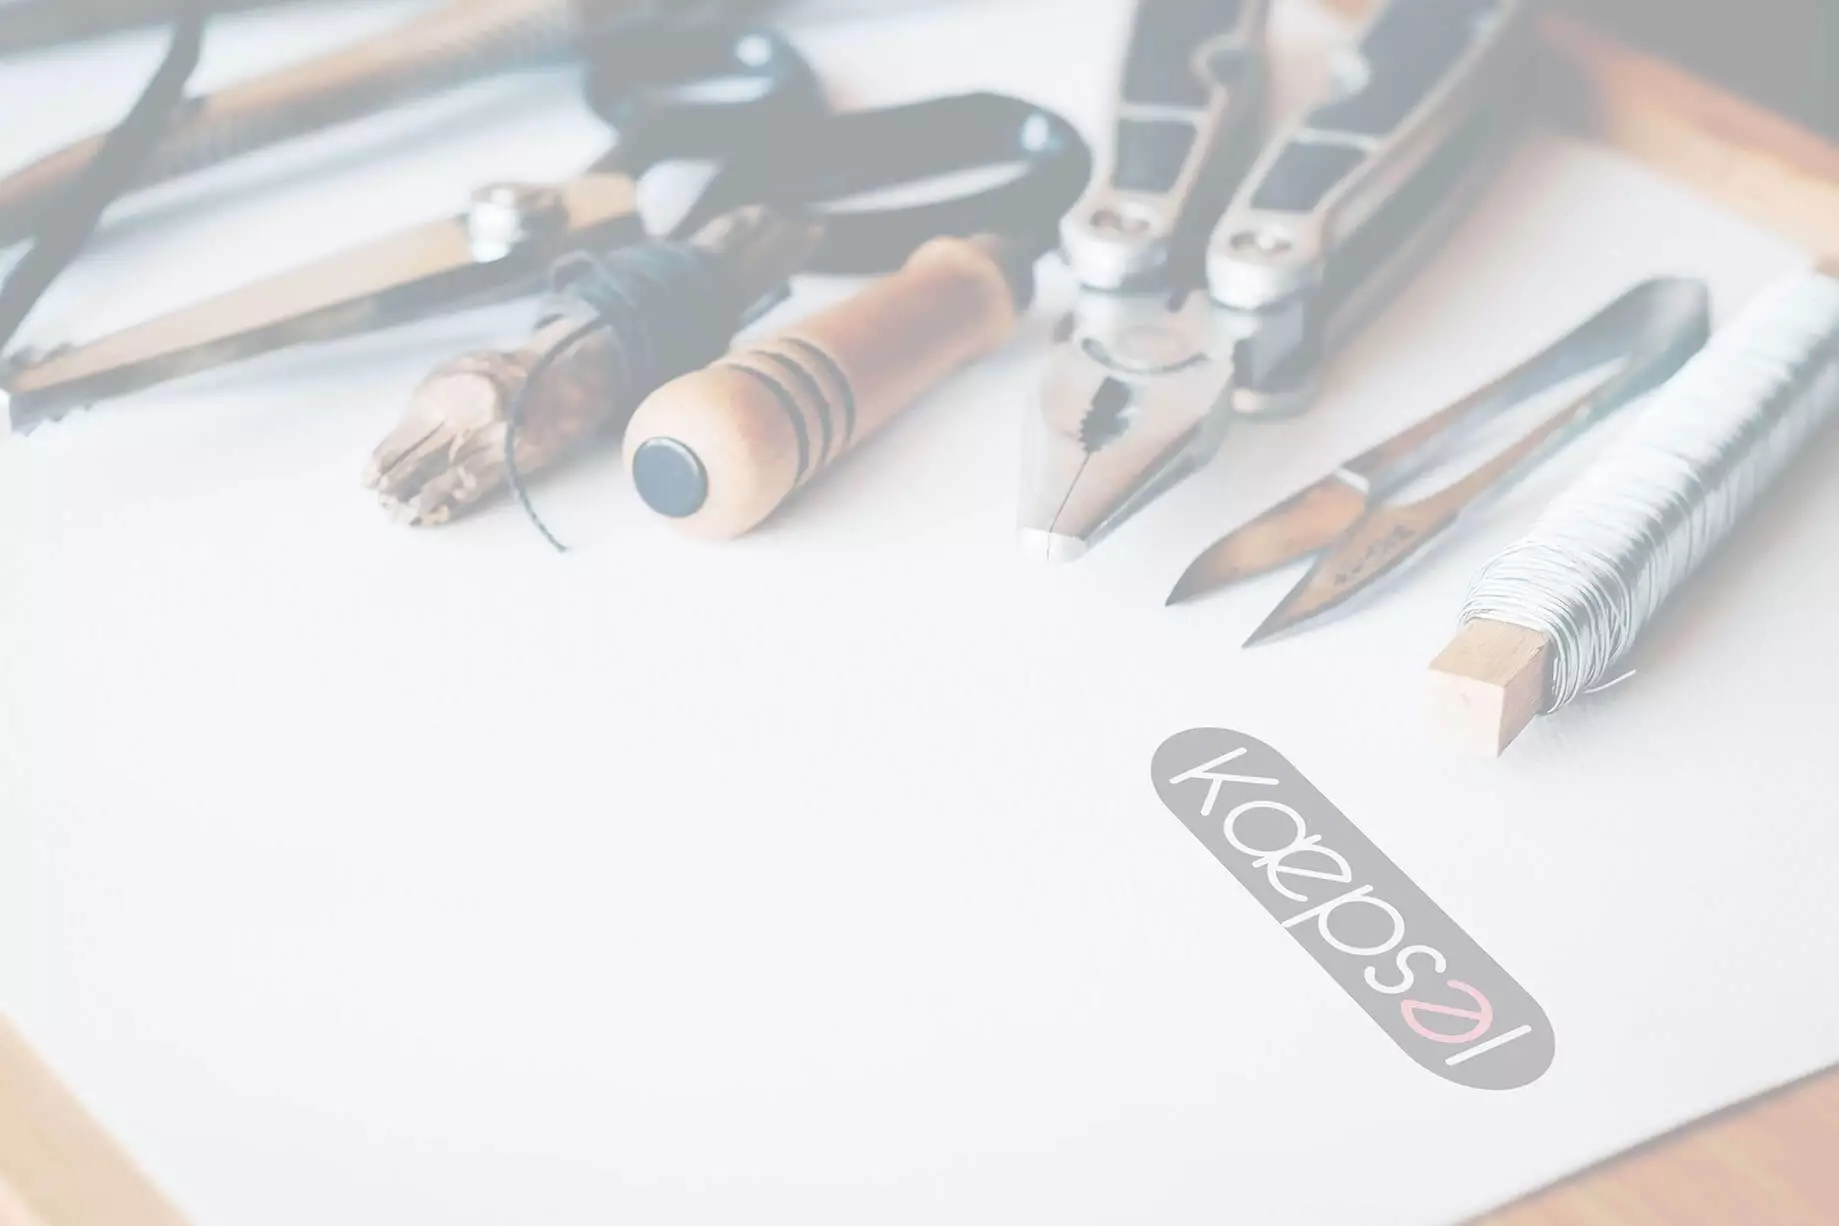 tools kit with kaepsel logo